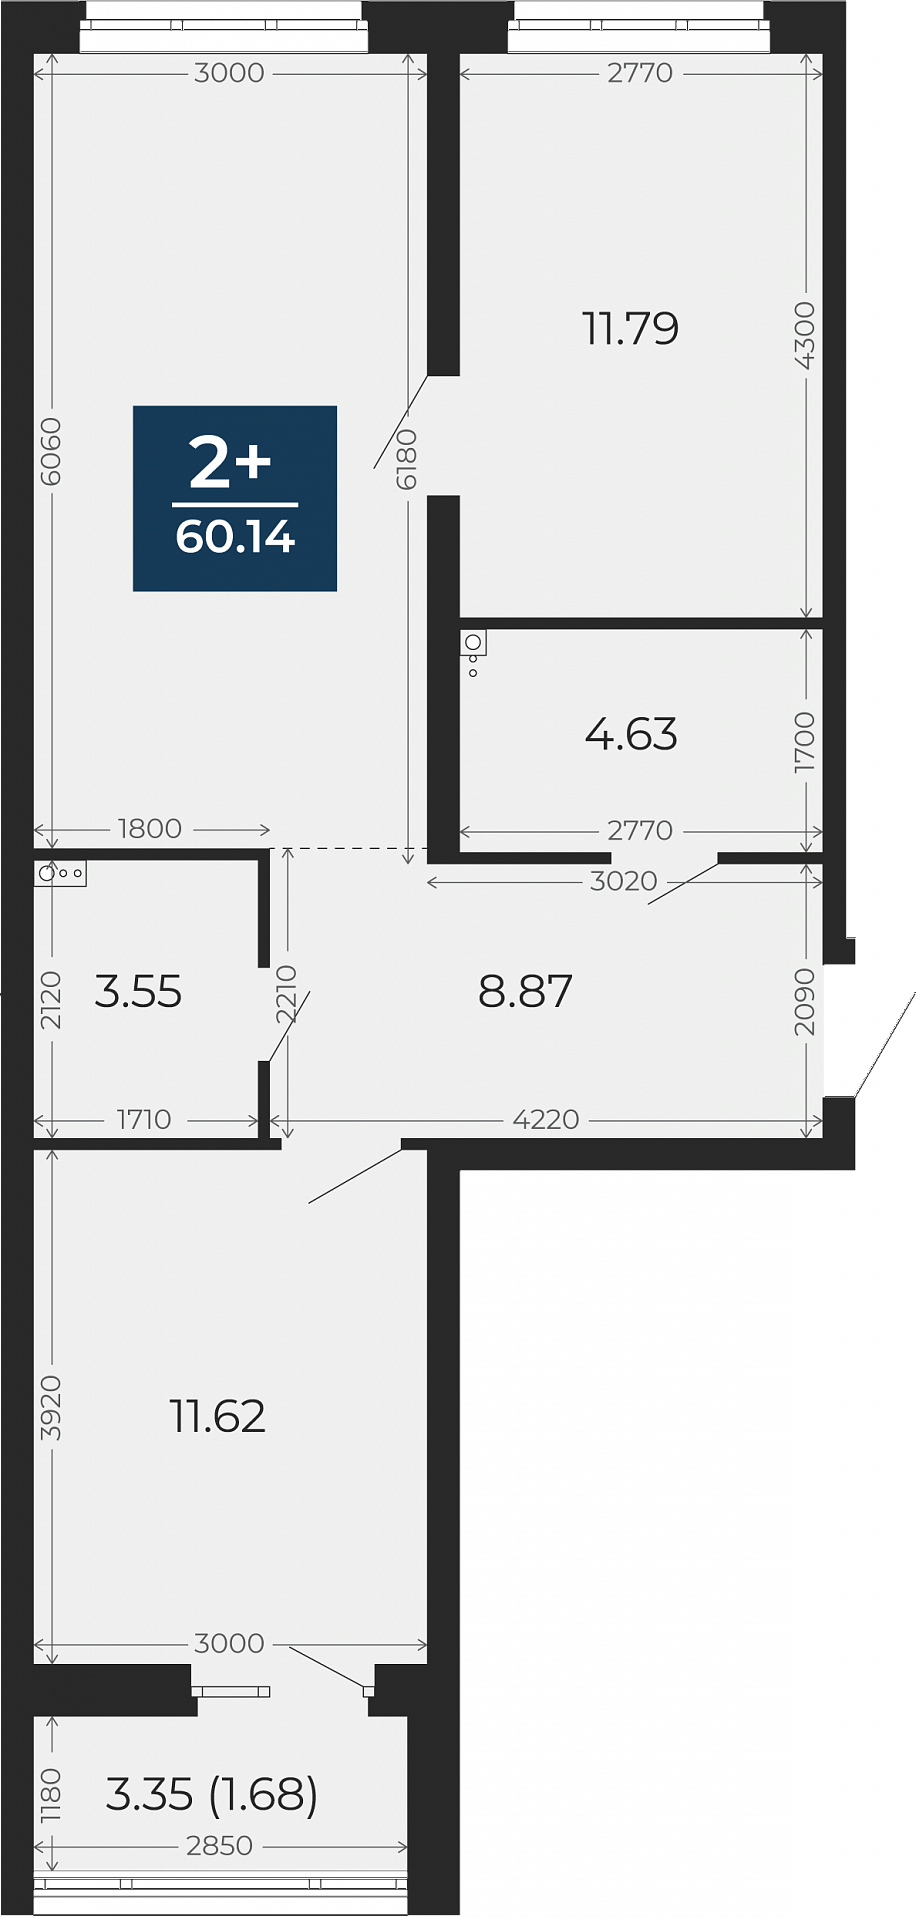 Квартира № 215, 2-комнатная, 60.14 кв. м, 2 этаж